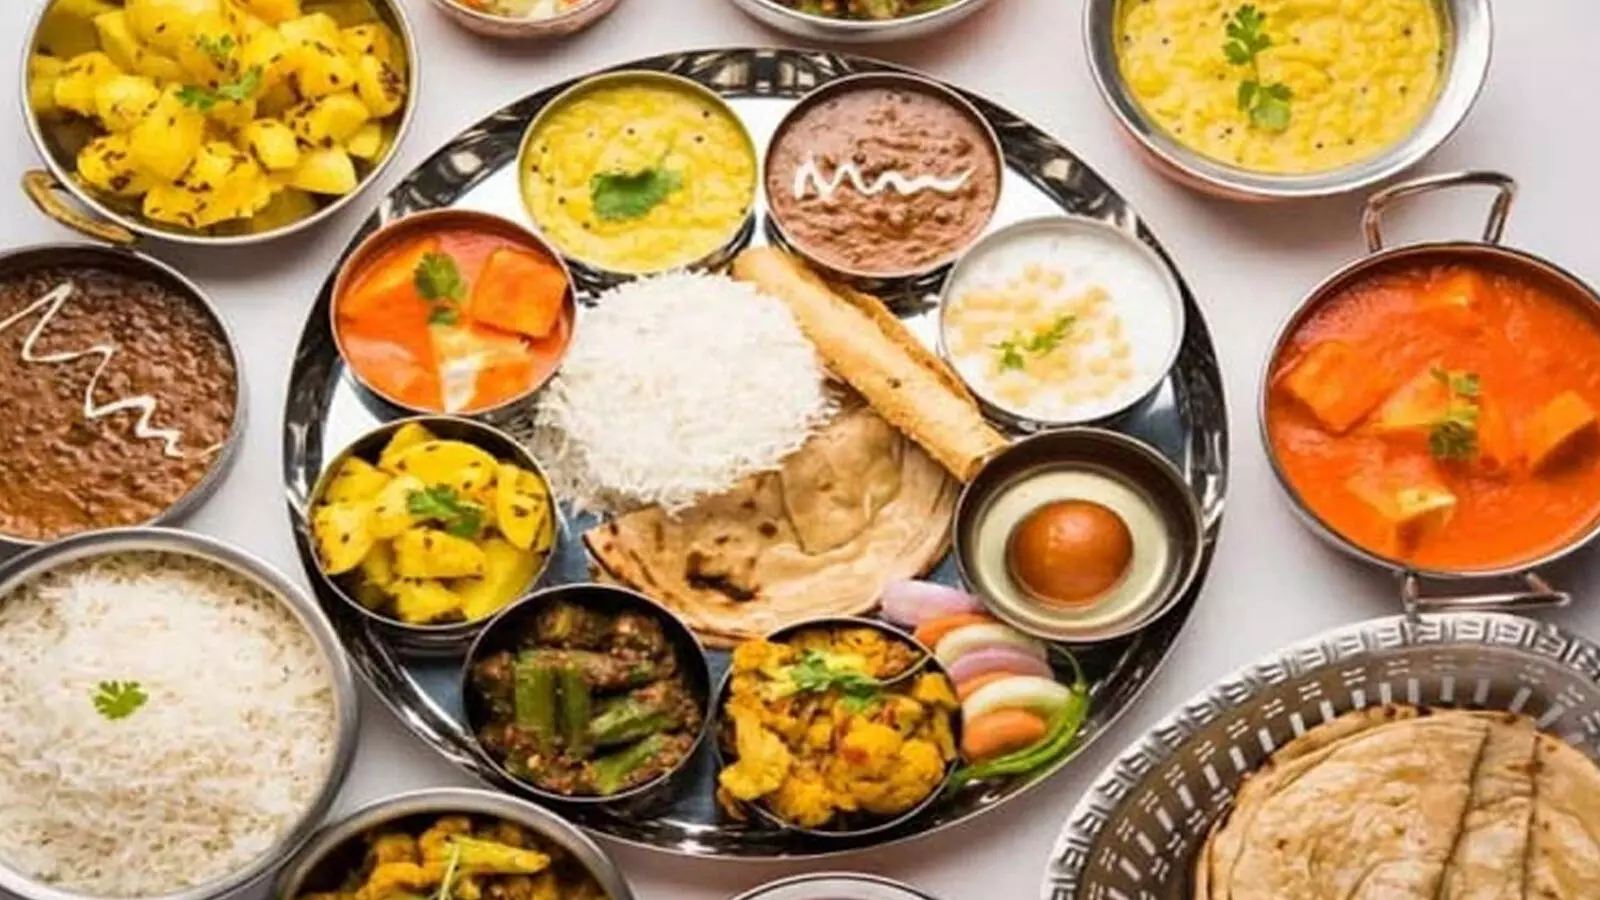 Bhishma Pitamah himself told these rules of food to Arjuna | पति-पत्नी करते हैं साथ में भोजन, तो जान लें क्या कहता है धर्मशास्त्र | News Track in Hindi